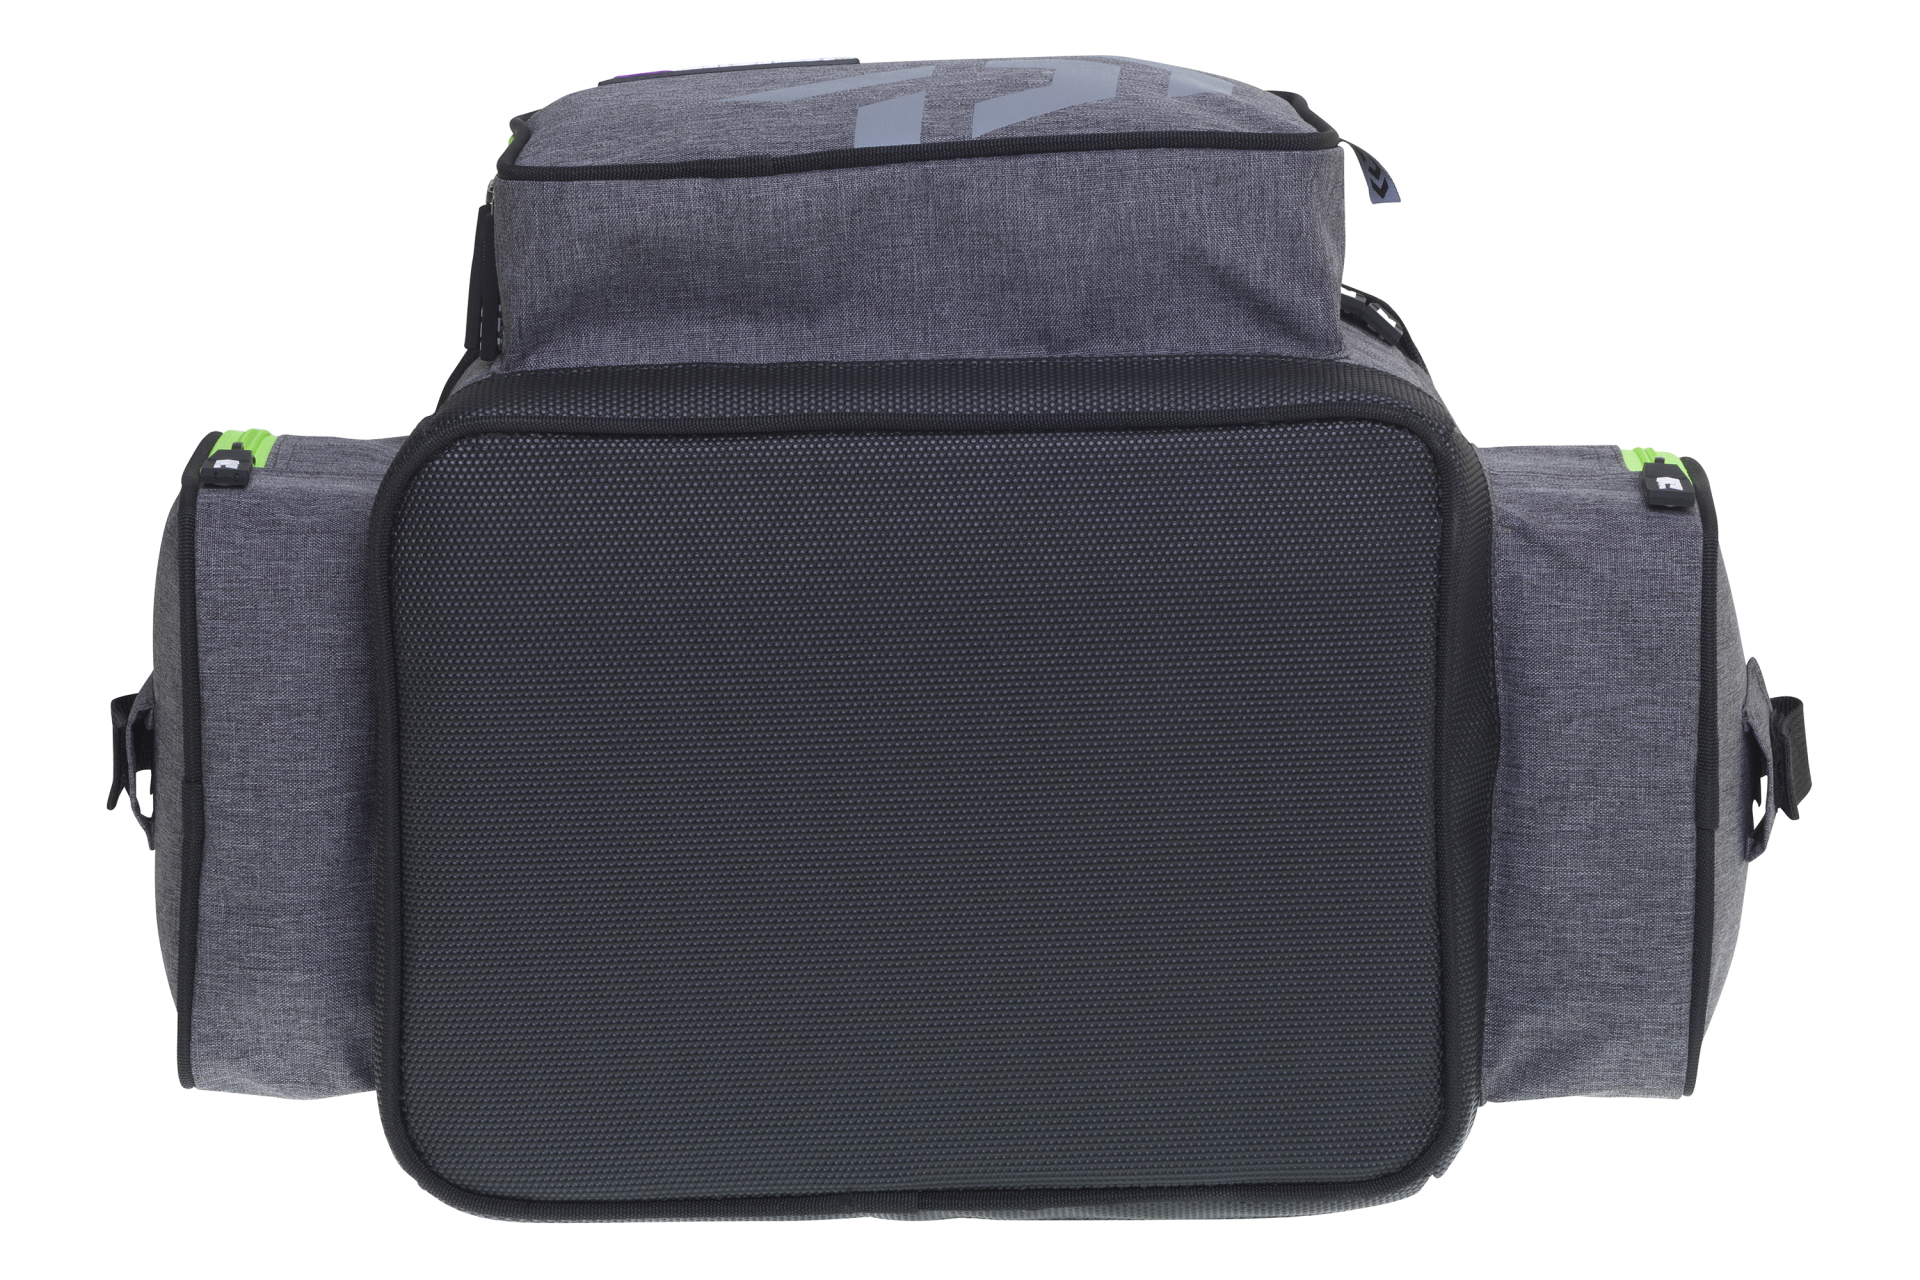 Prorex D-Box Tackle Bag <span>| Pergető táska | M-es méret</span>